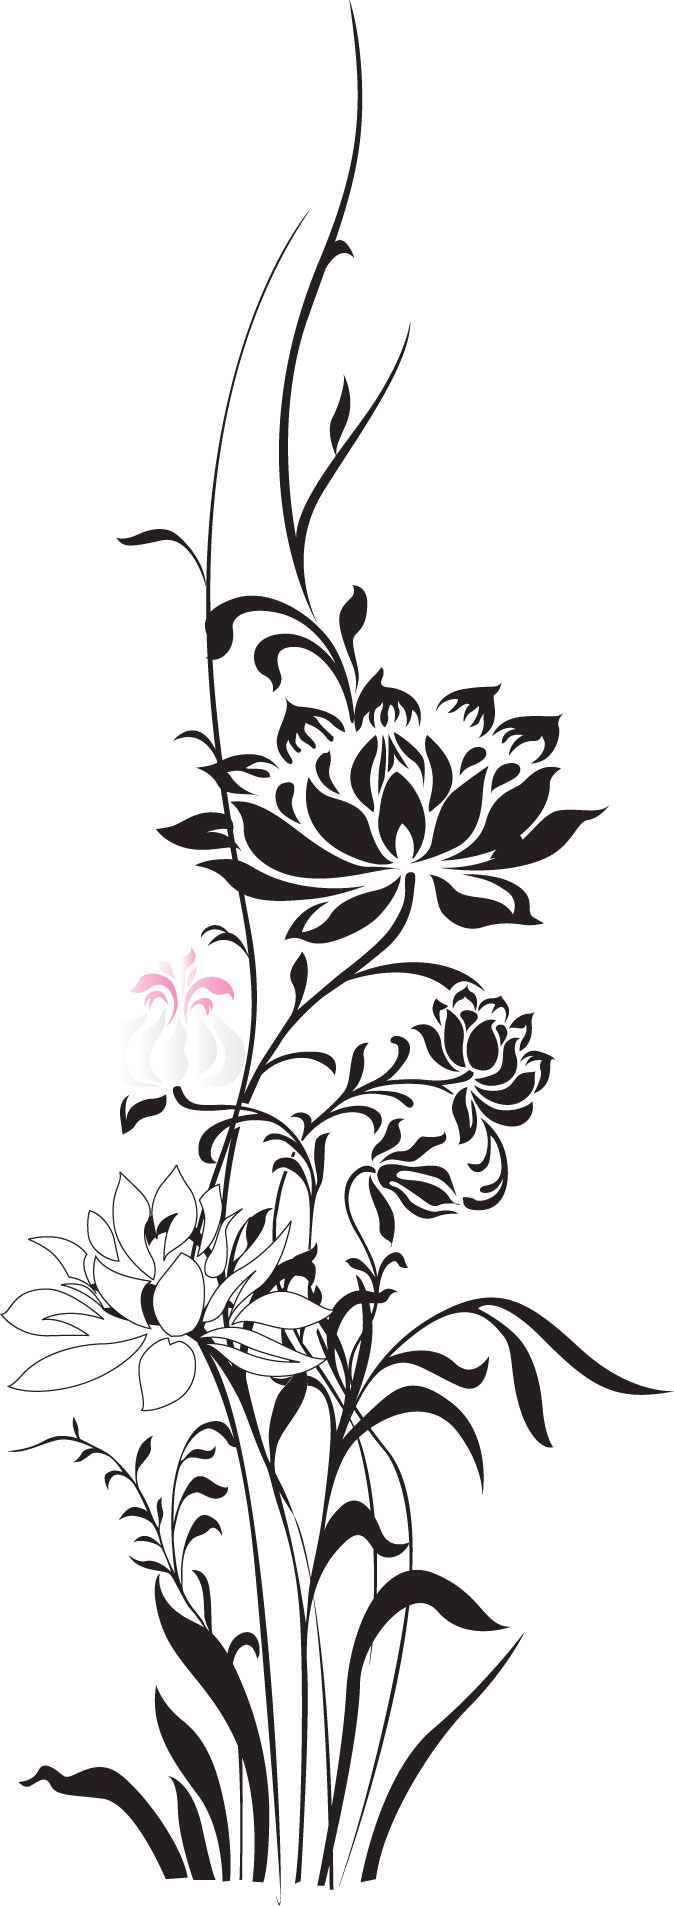 花のイラスト フリー素材 フレーム枠no 2 黒 ピンク 枝葉